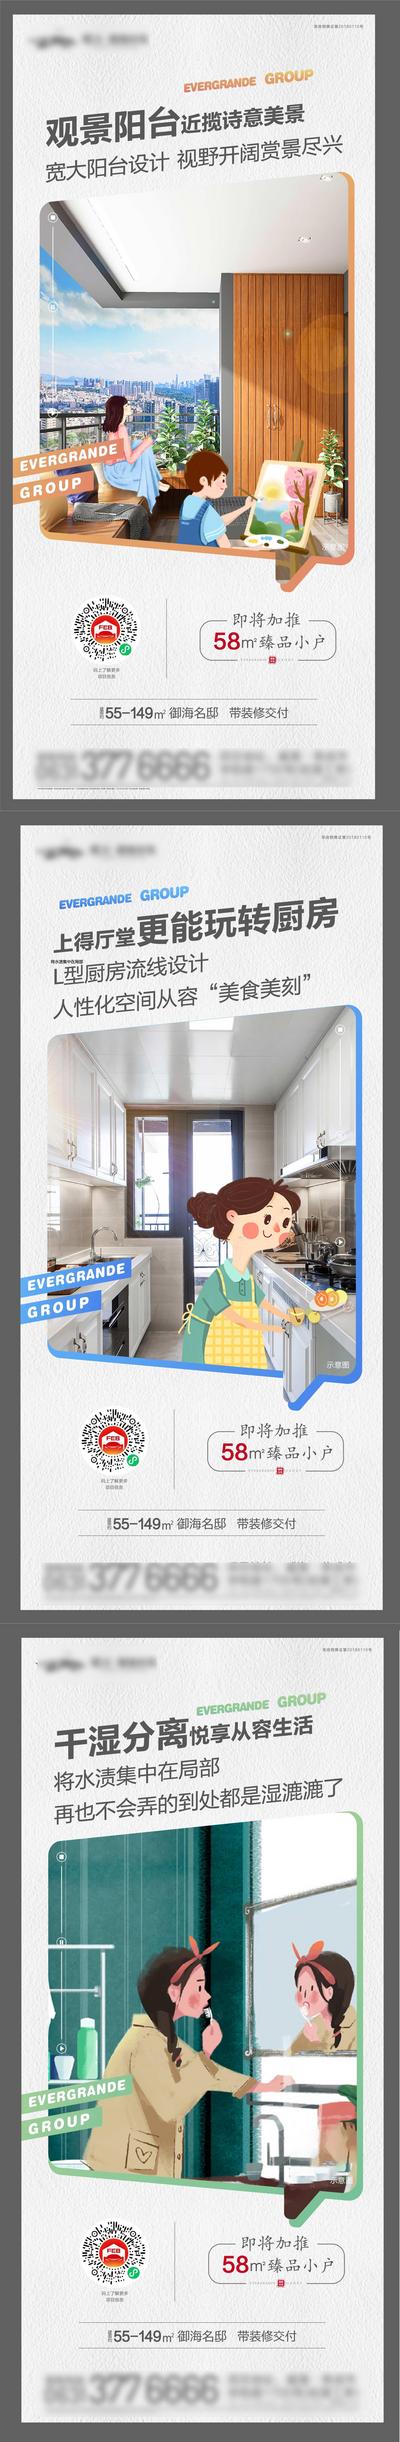 南门网 广告 海报 地产 户型 插画 系列 价值点 户型 厨房 干湿分离